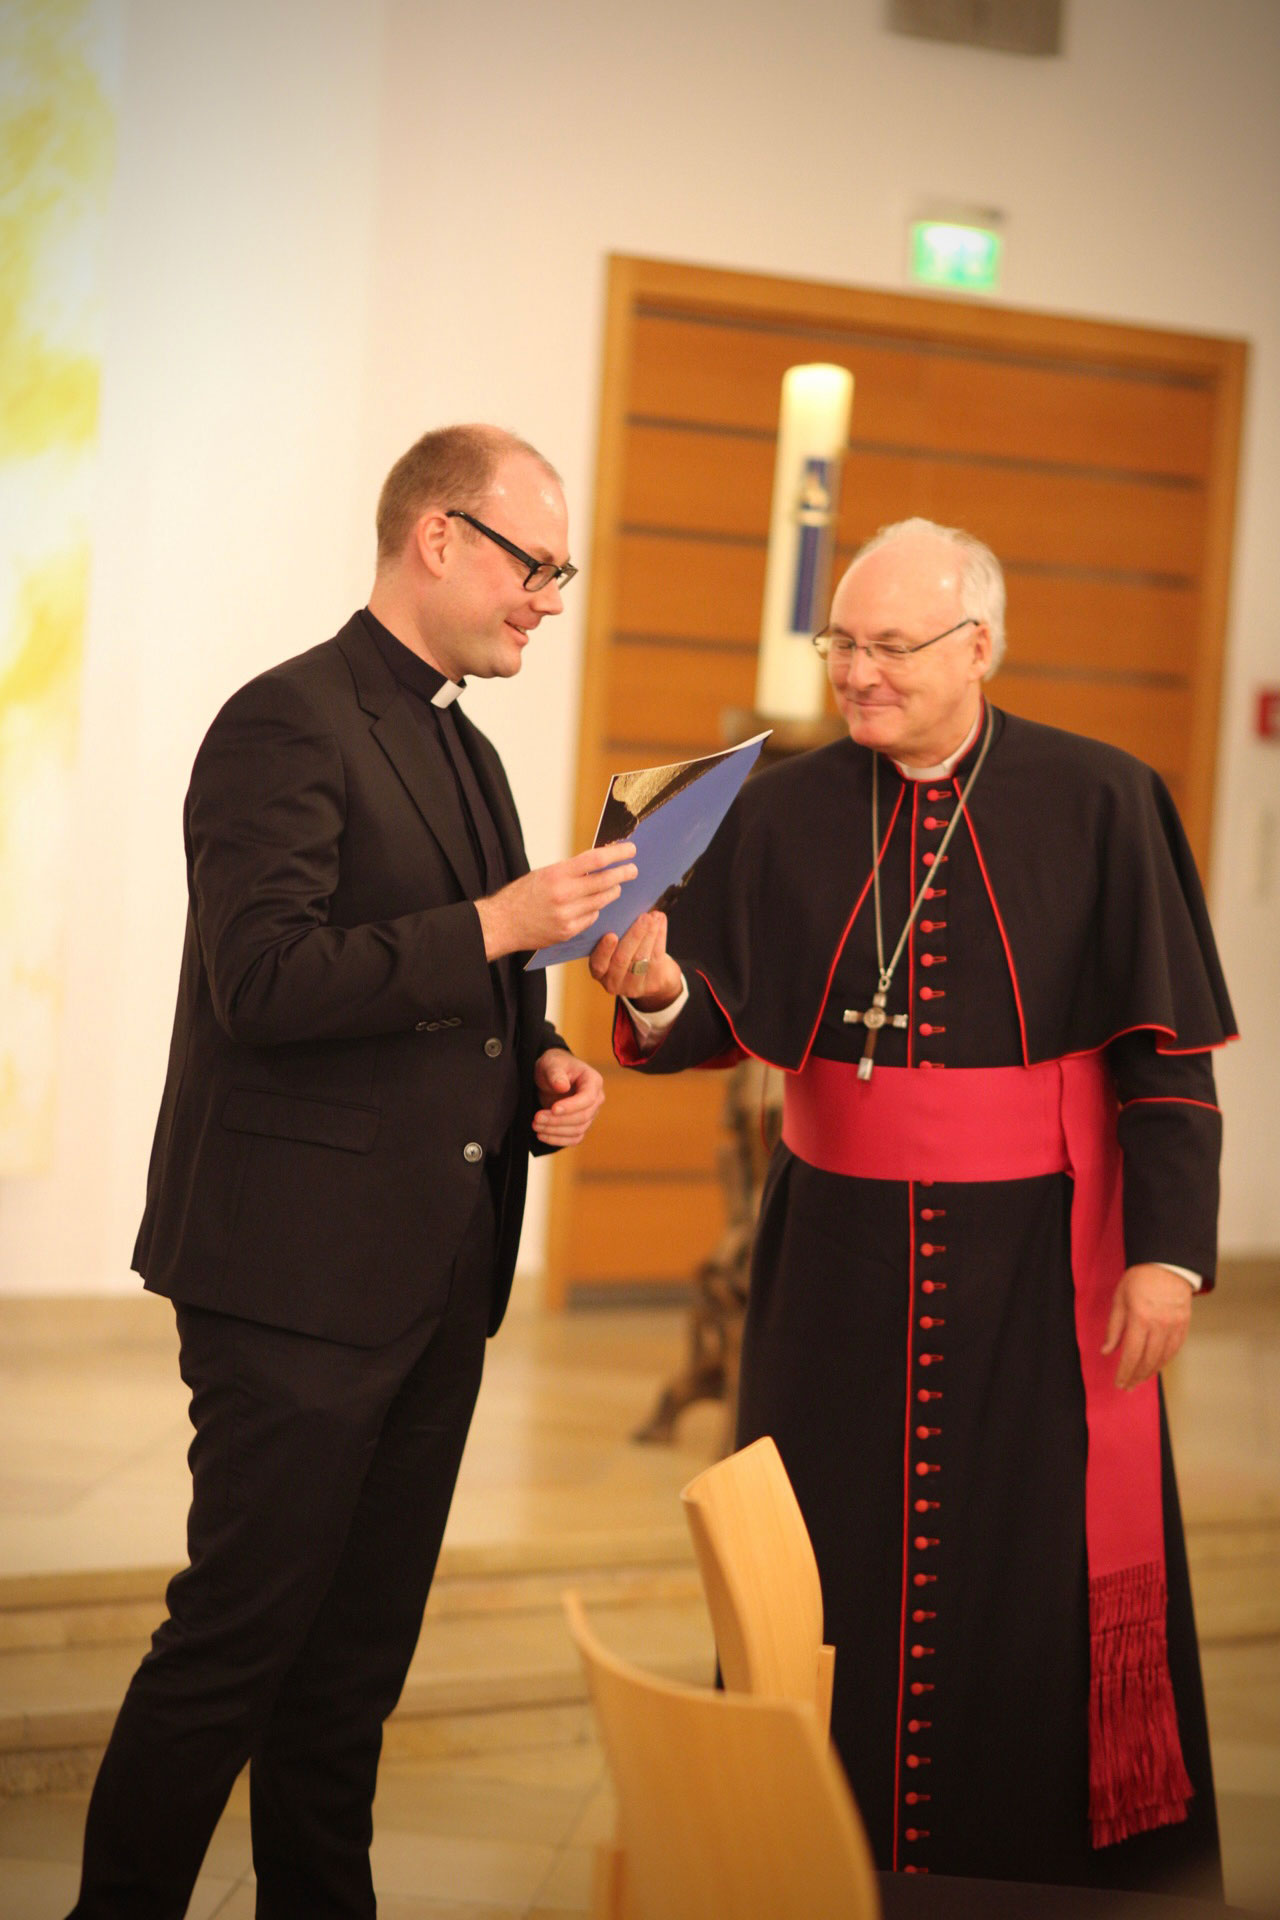 Bischof übergibt Urkunde an einen jungen Priester